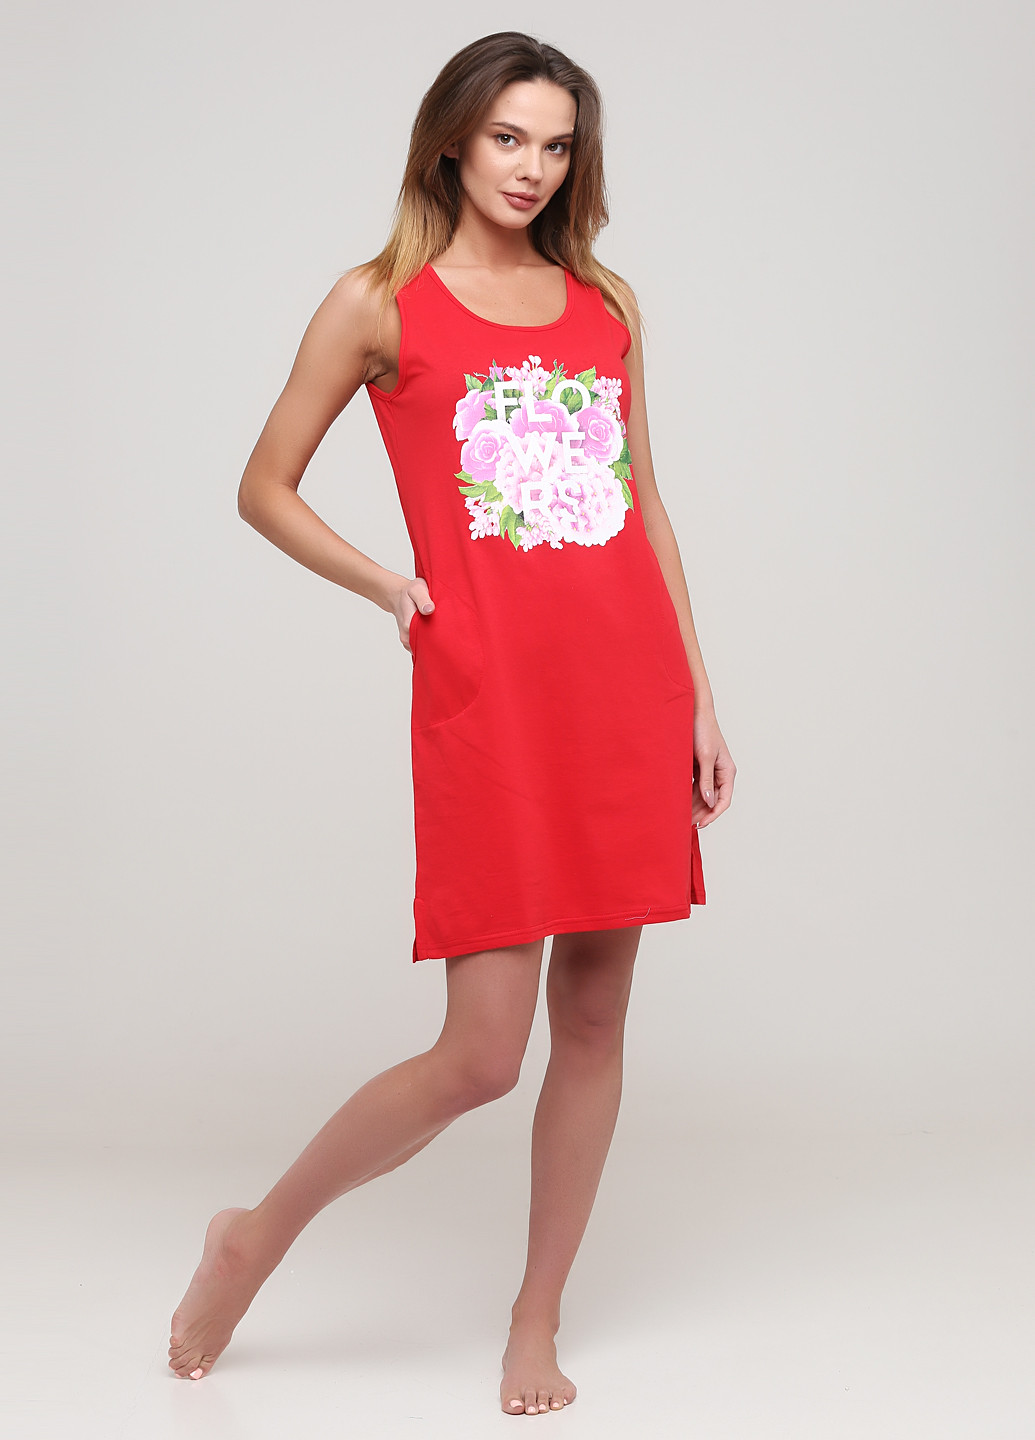 Яскраво-червона домашній сукня Трикомир з квітковим принтом